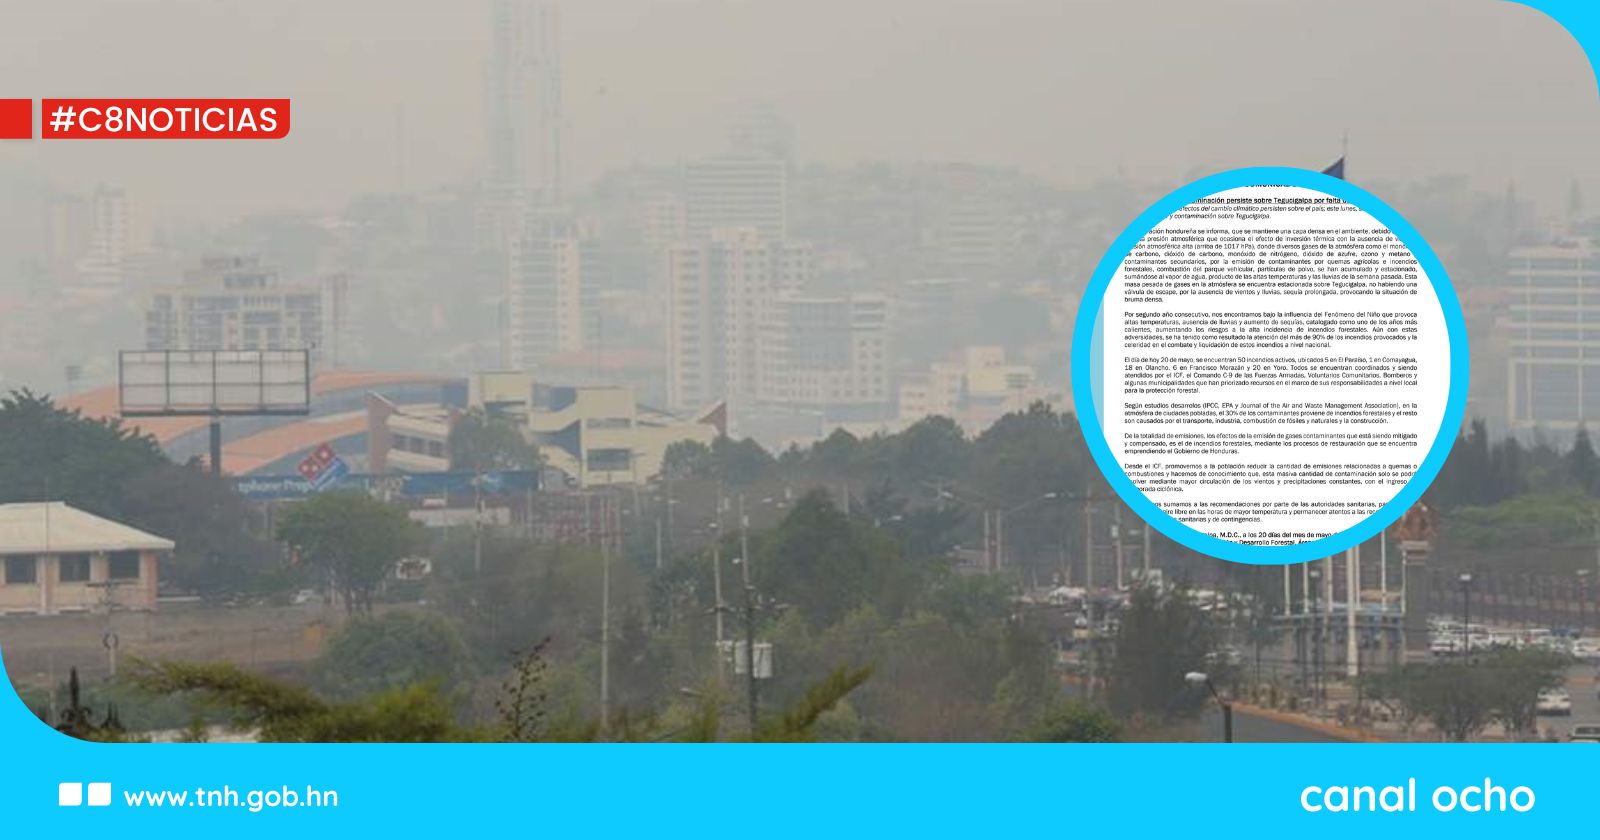 ICF: persiste capa de vapor y contaminación por falta de vientos y lluvias en Tegucigalpa